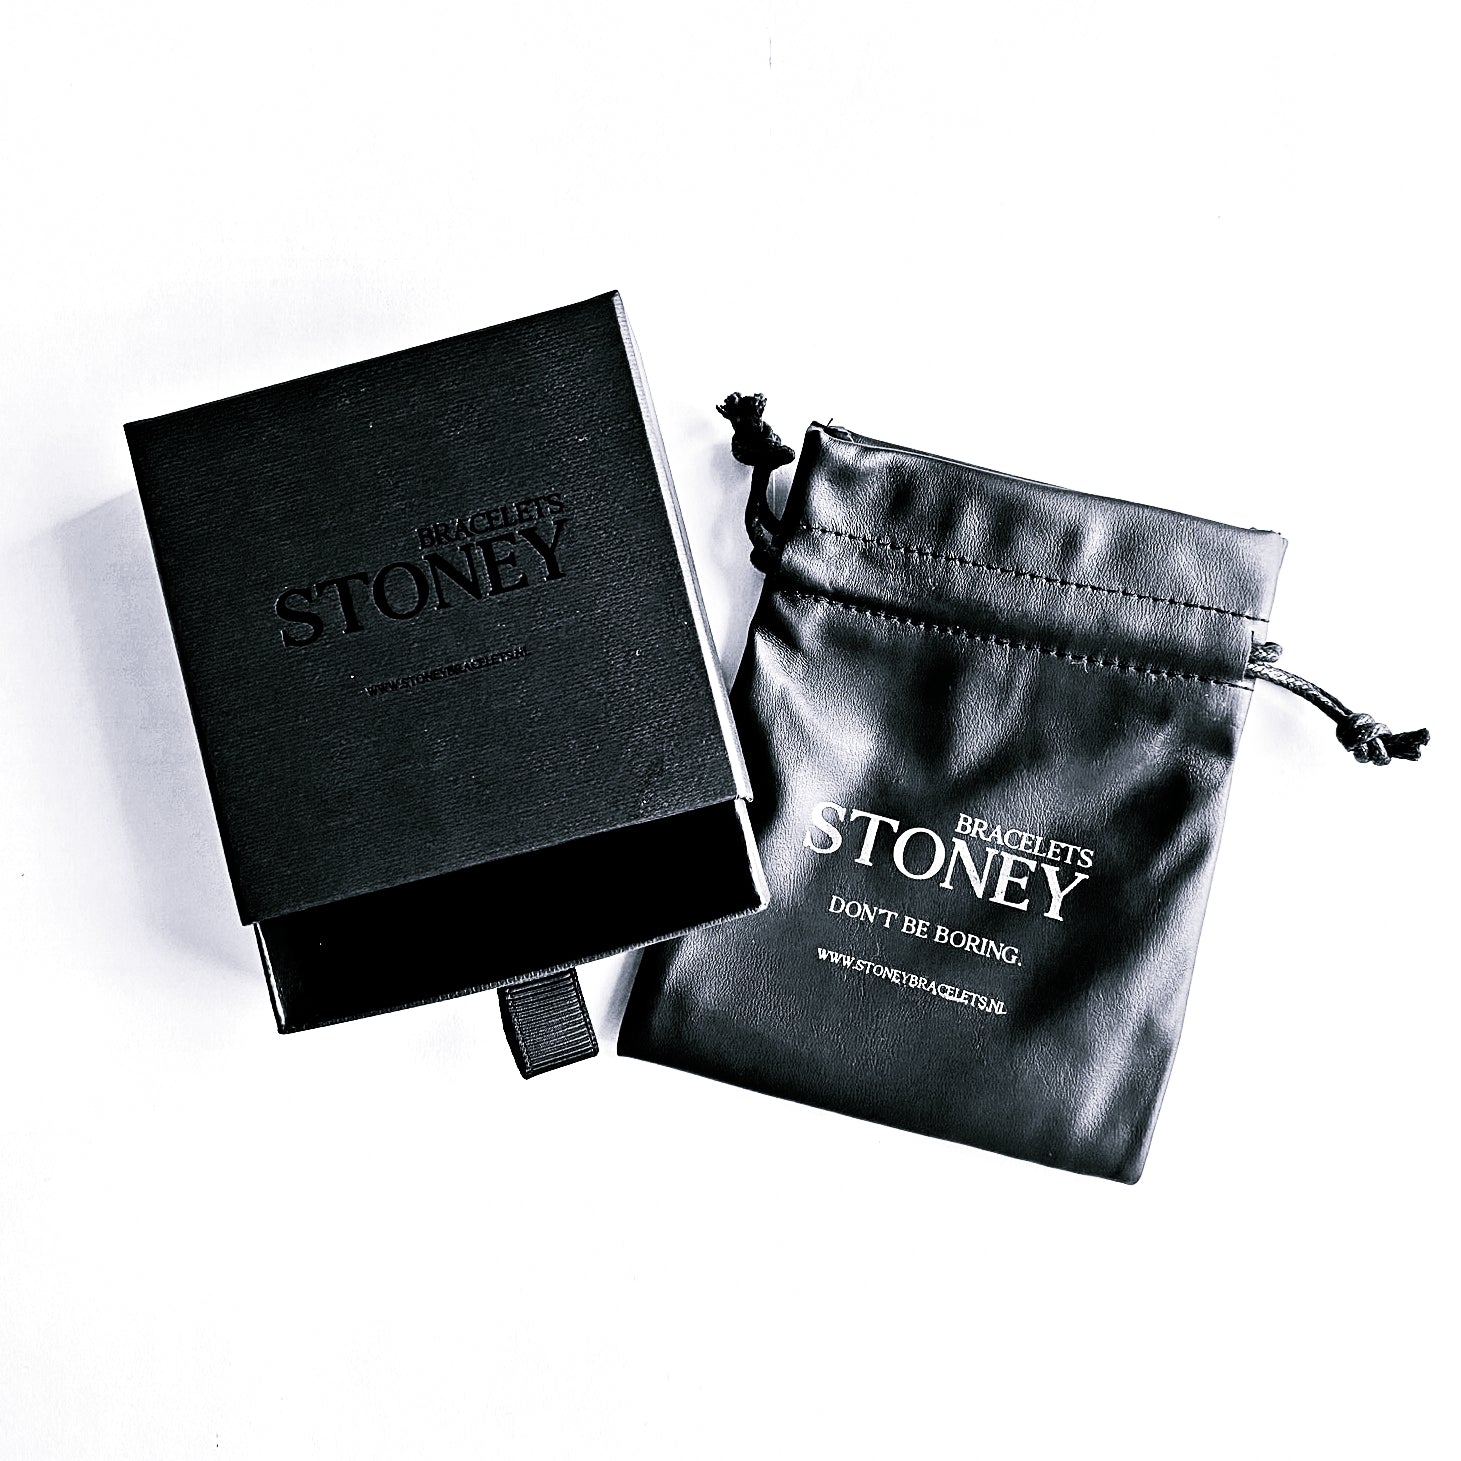 Een zwart etui met het woord Stoney Bracelets erop, perfect voor het opbergen van je Saburra Set natuursteen sieraden of kralenkralen.